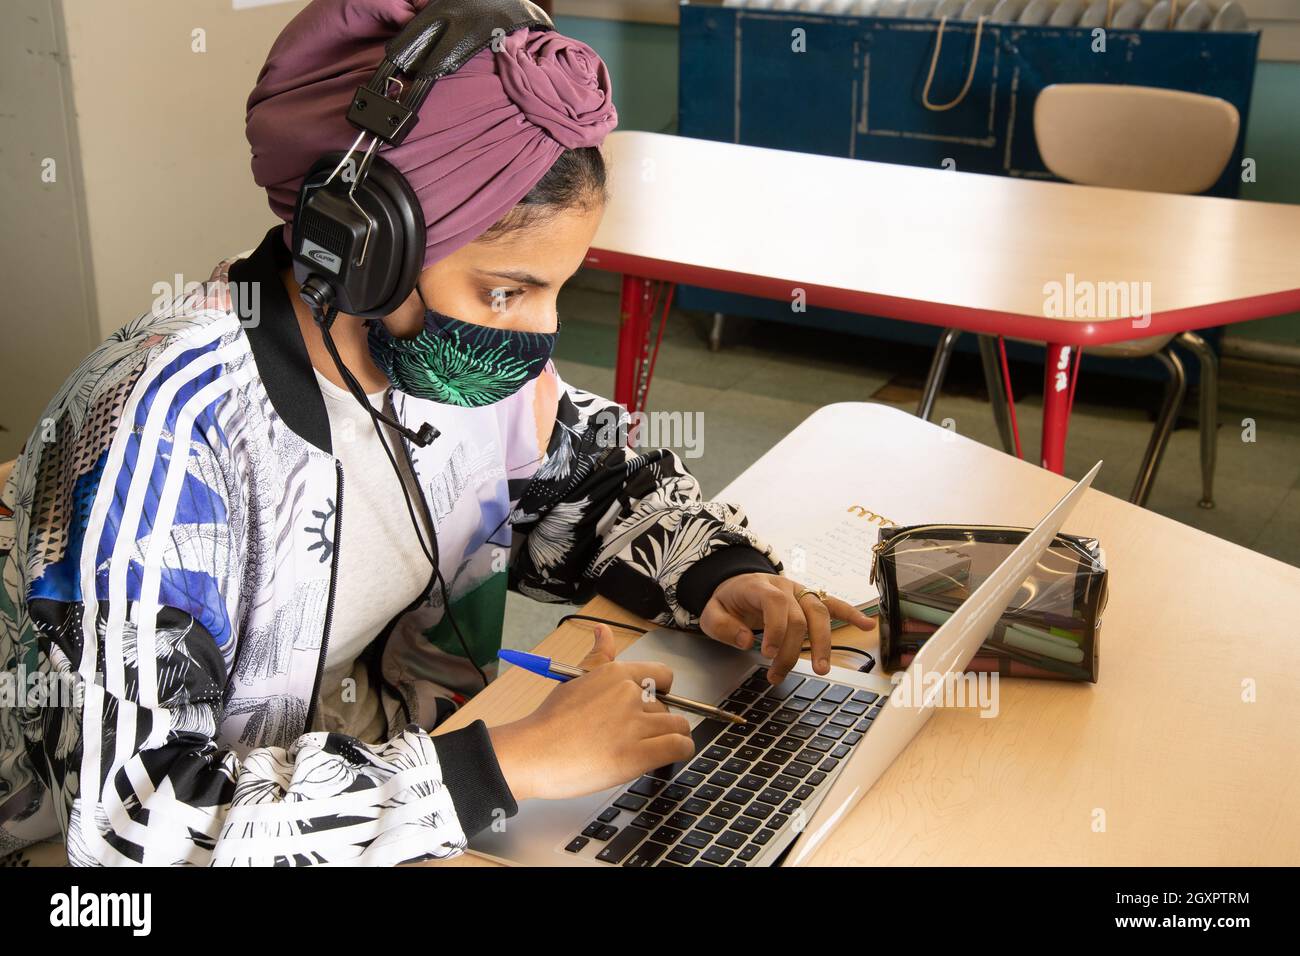 Schulschülerin, die in der Klasse an einem Laptop arbeitet, Kopfhörer trägt und eine Gesichtsmaske trägt, um sich vor dem Covid-19-Virus zu schützen Stockfoto